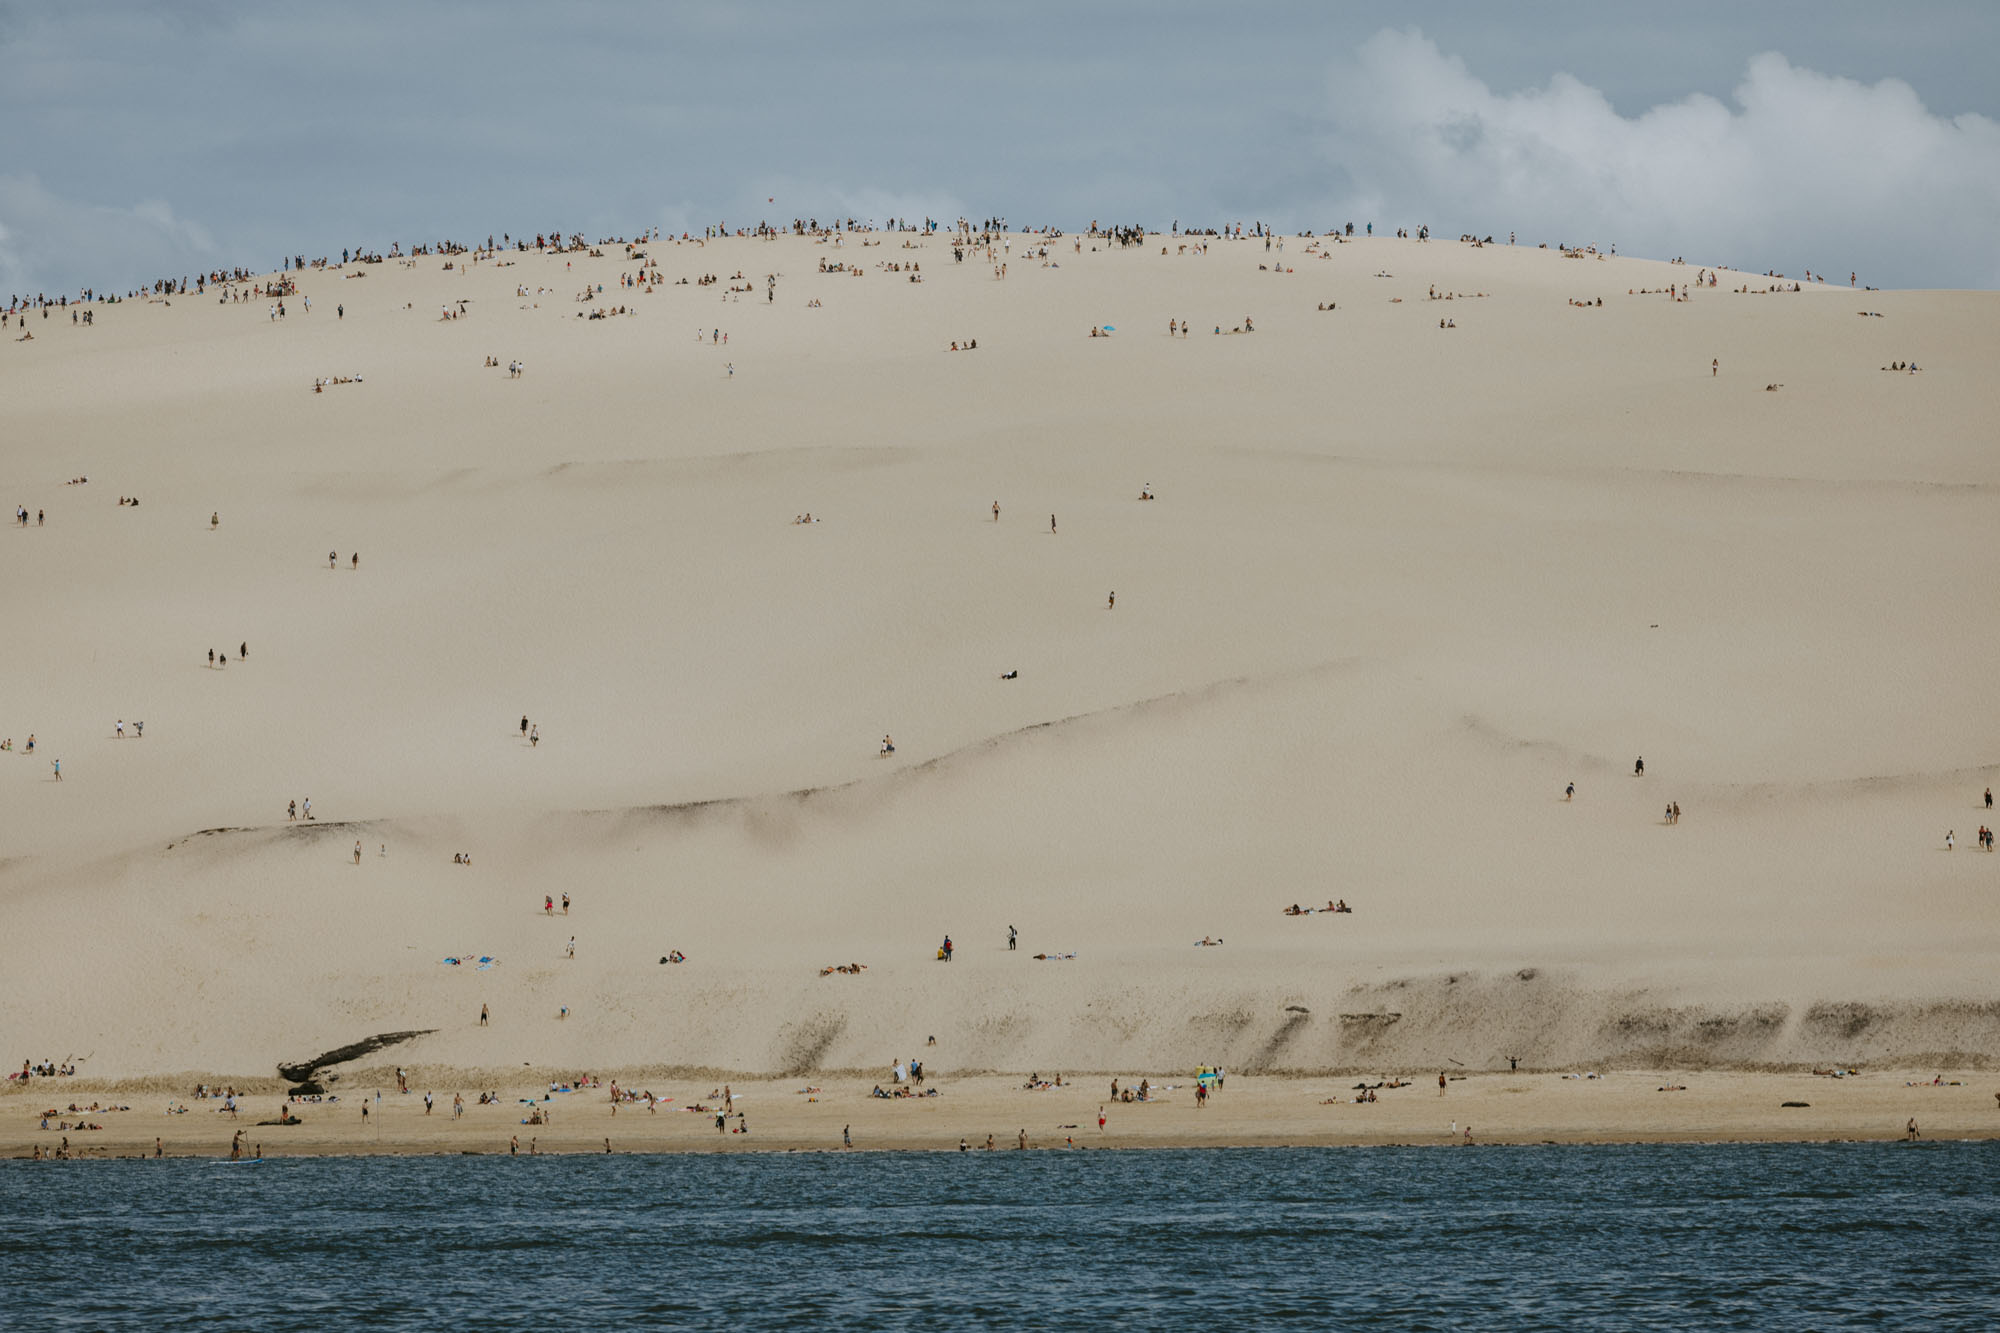 Mariage à Arcachon: la navette passe en bas de la dune du Pyla et les invités peuvent en profiter pour regarder les touristes, comme des petits points colorés parsemant la dune